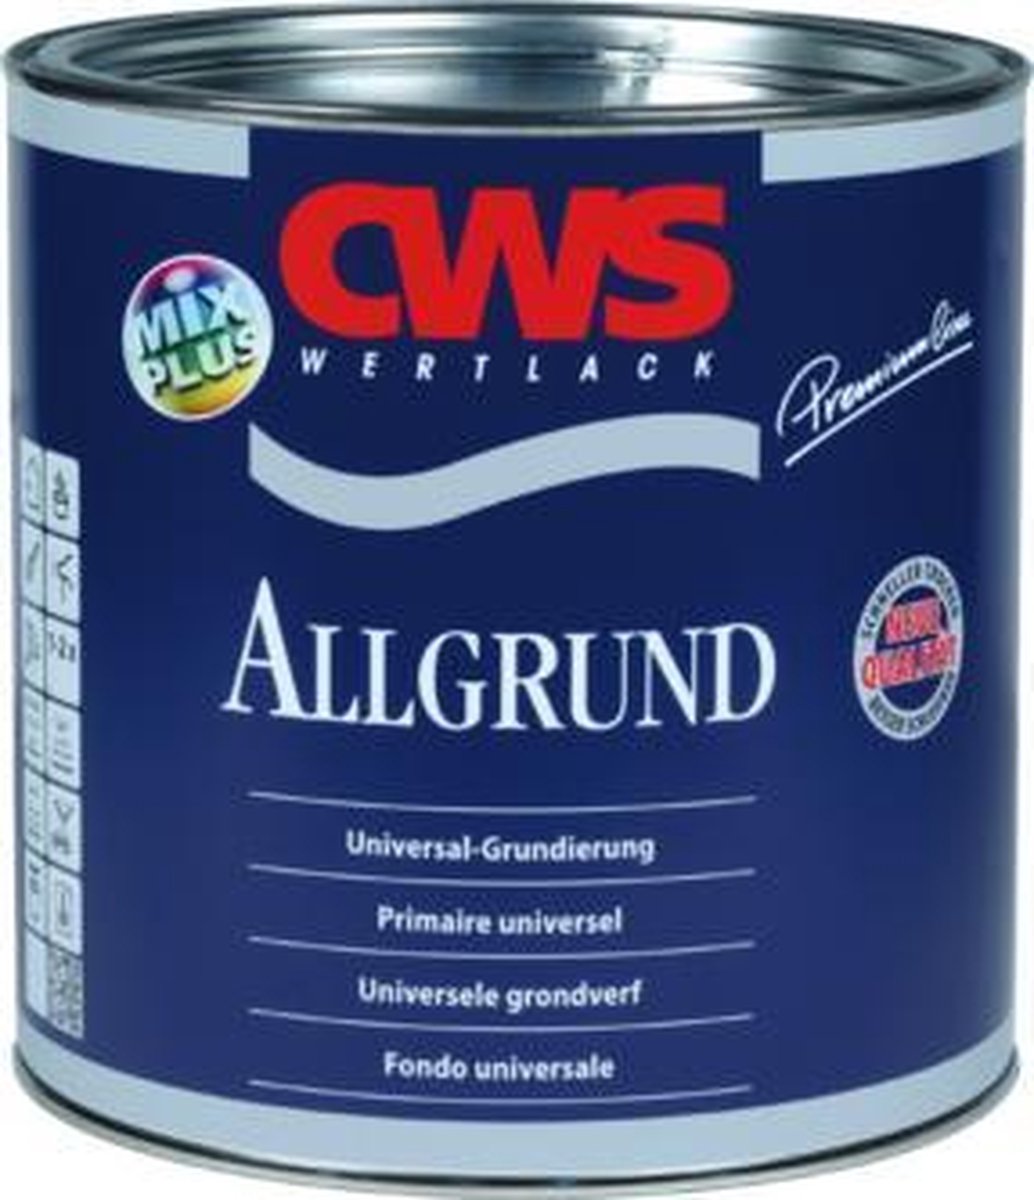 Cws 6011 Allgrund Grondverf - 375 ml